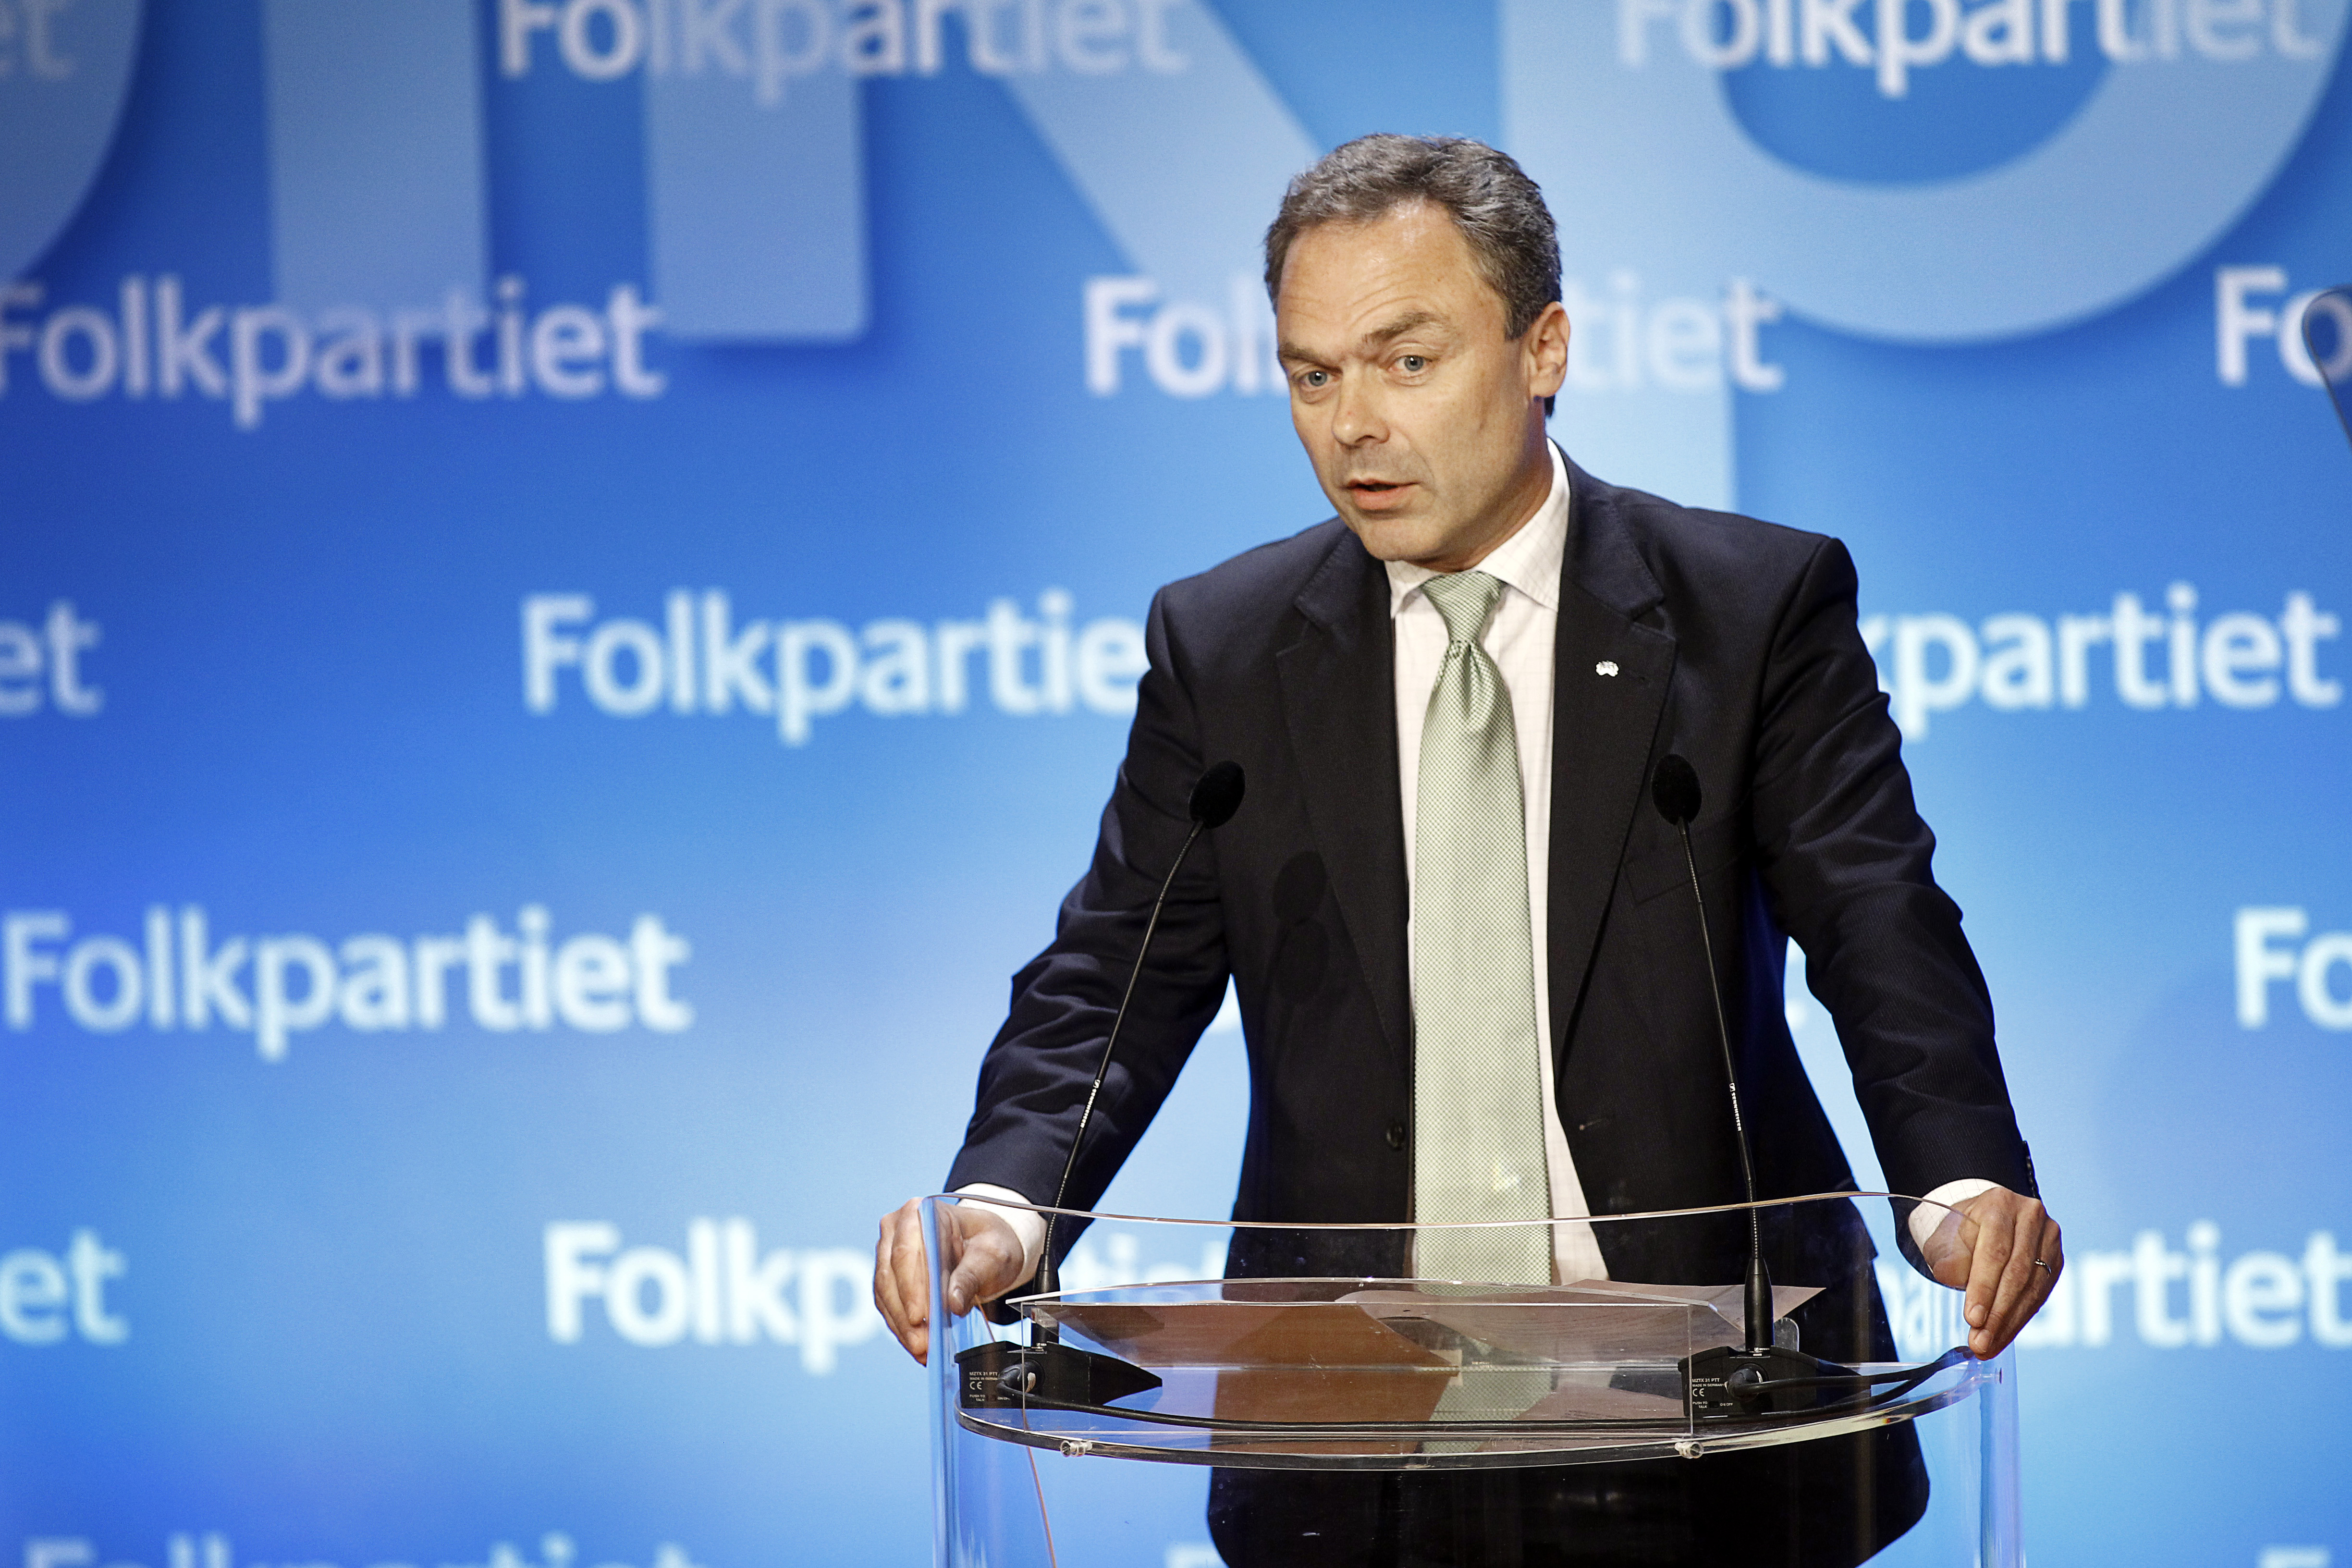 Politik, Regeringen, Alliansen, Riksdagsvalet 2010, Jan Björklund, Liberalerna